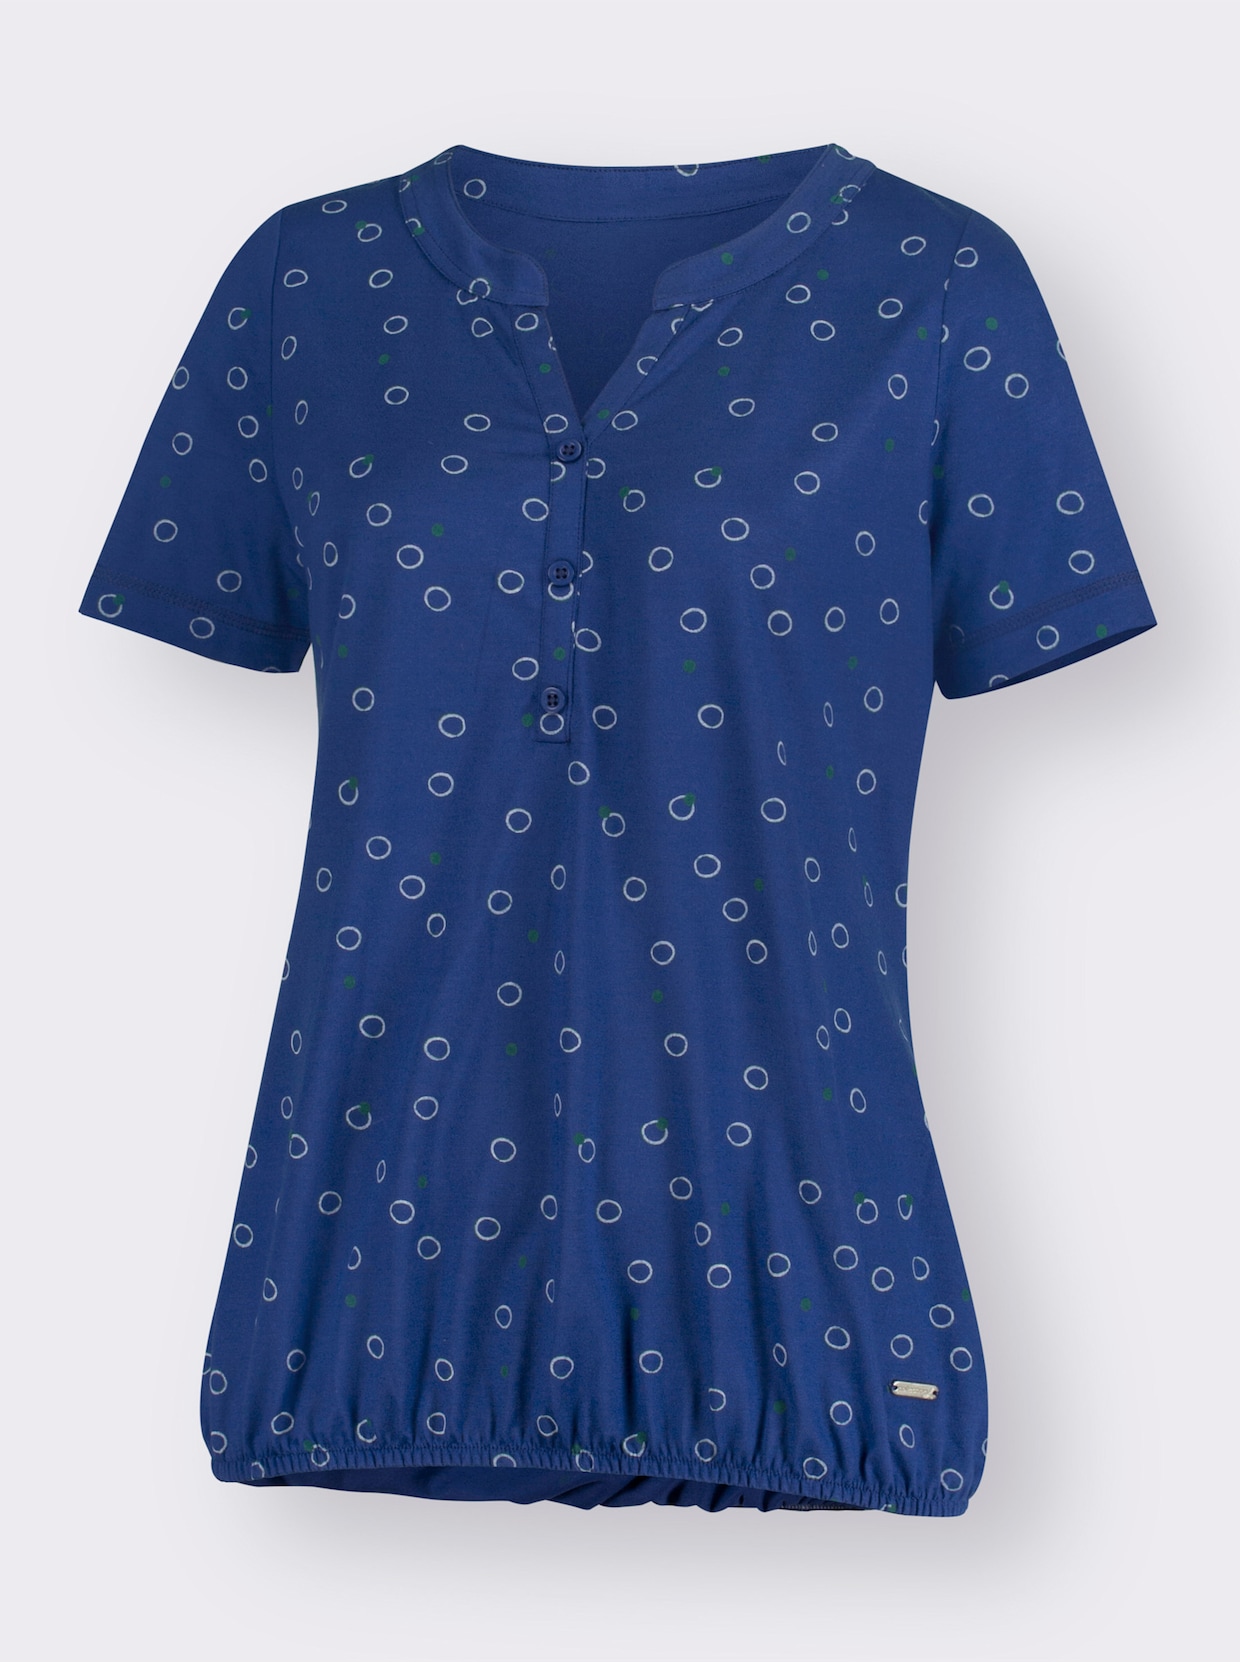 Tričko s potlačou - kráľovská modrá-biela potlač